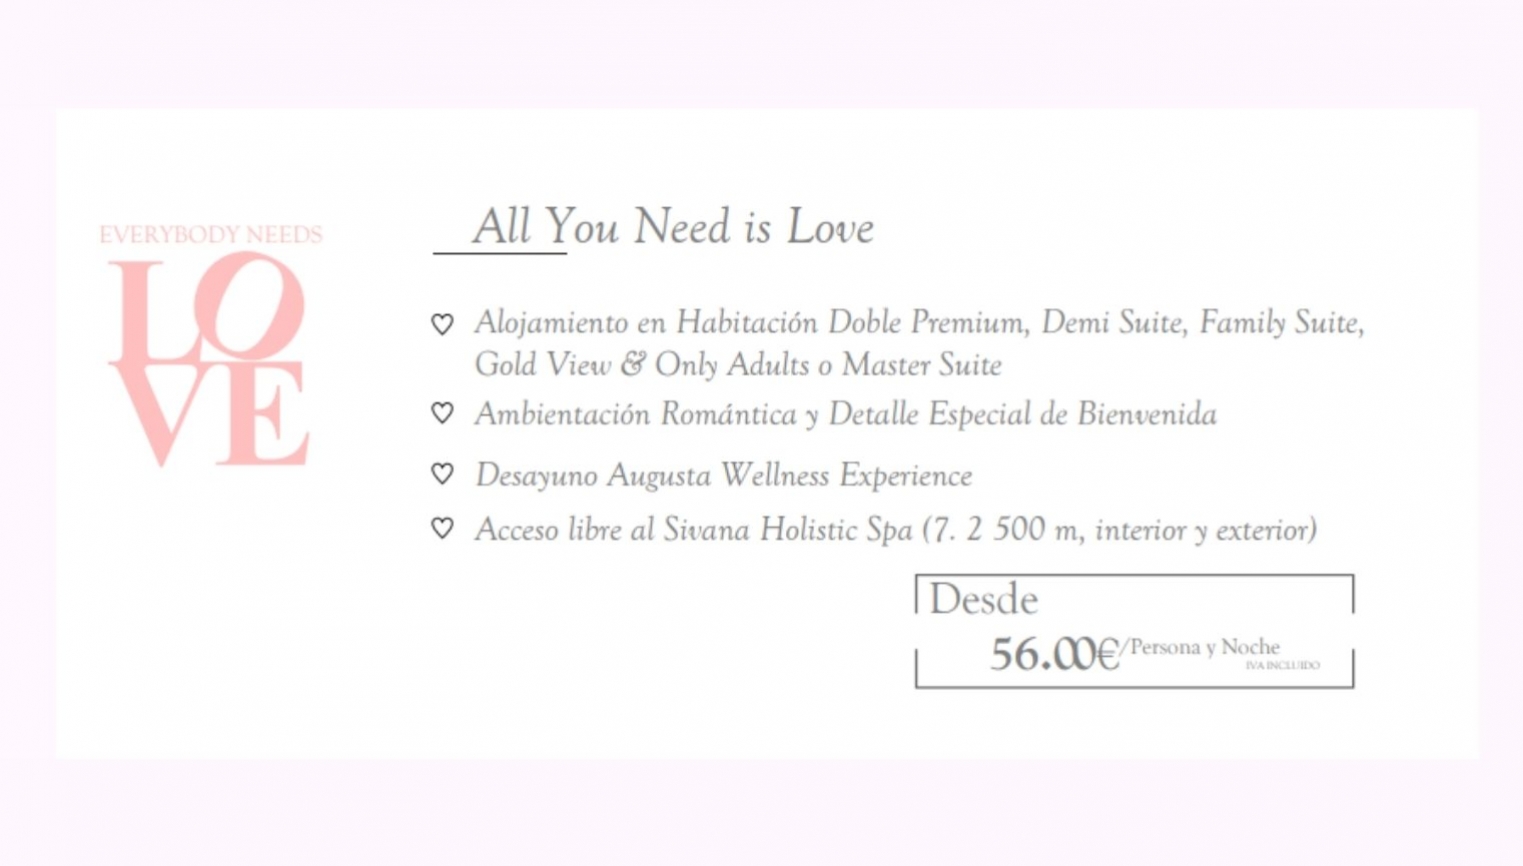 All you need is love - Alojamiento romántico con desayuno y acceso al Spa 56€/persona - foto 2/11